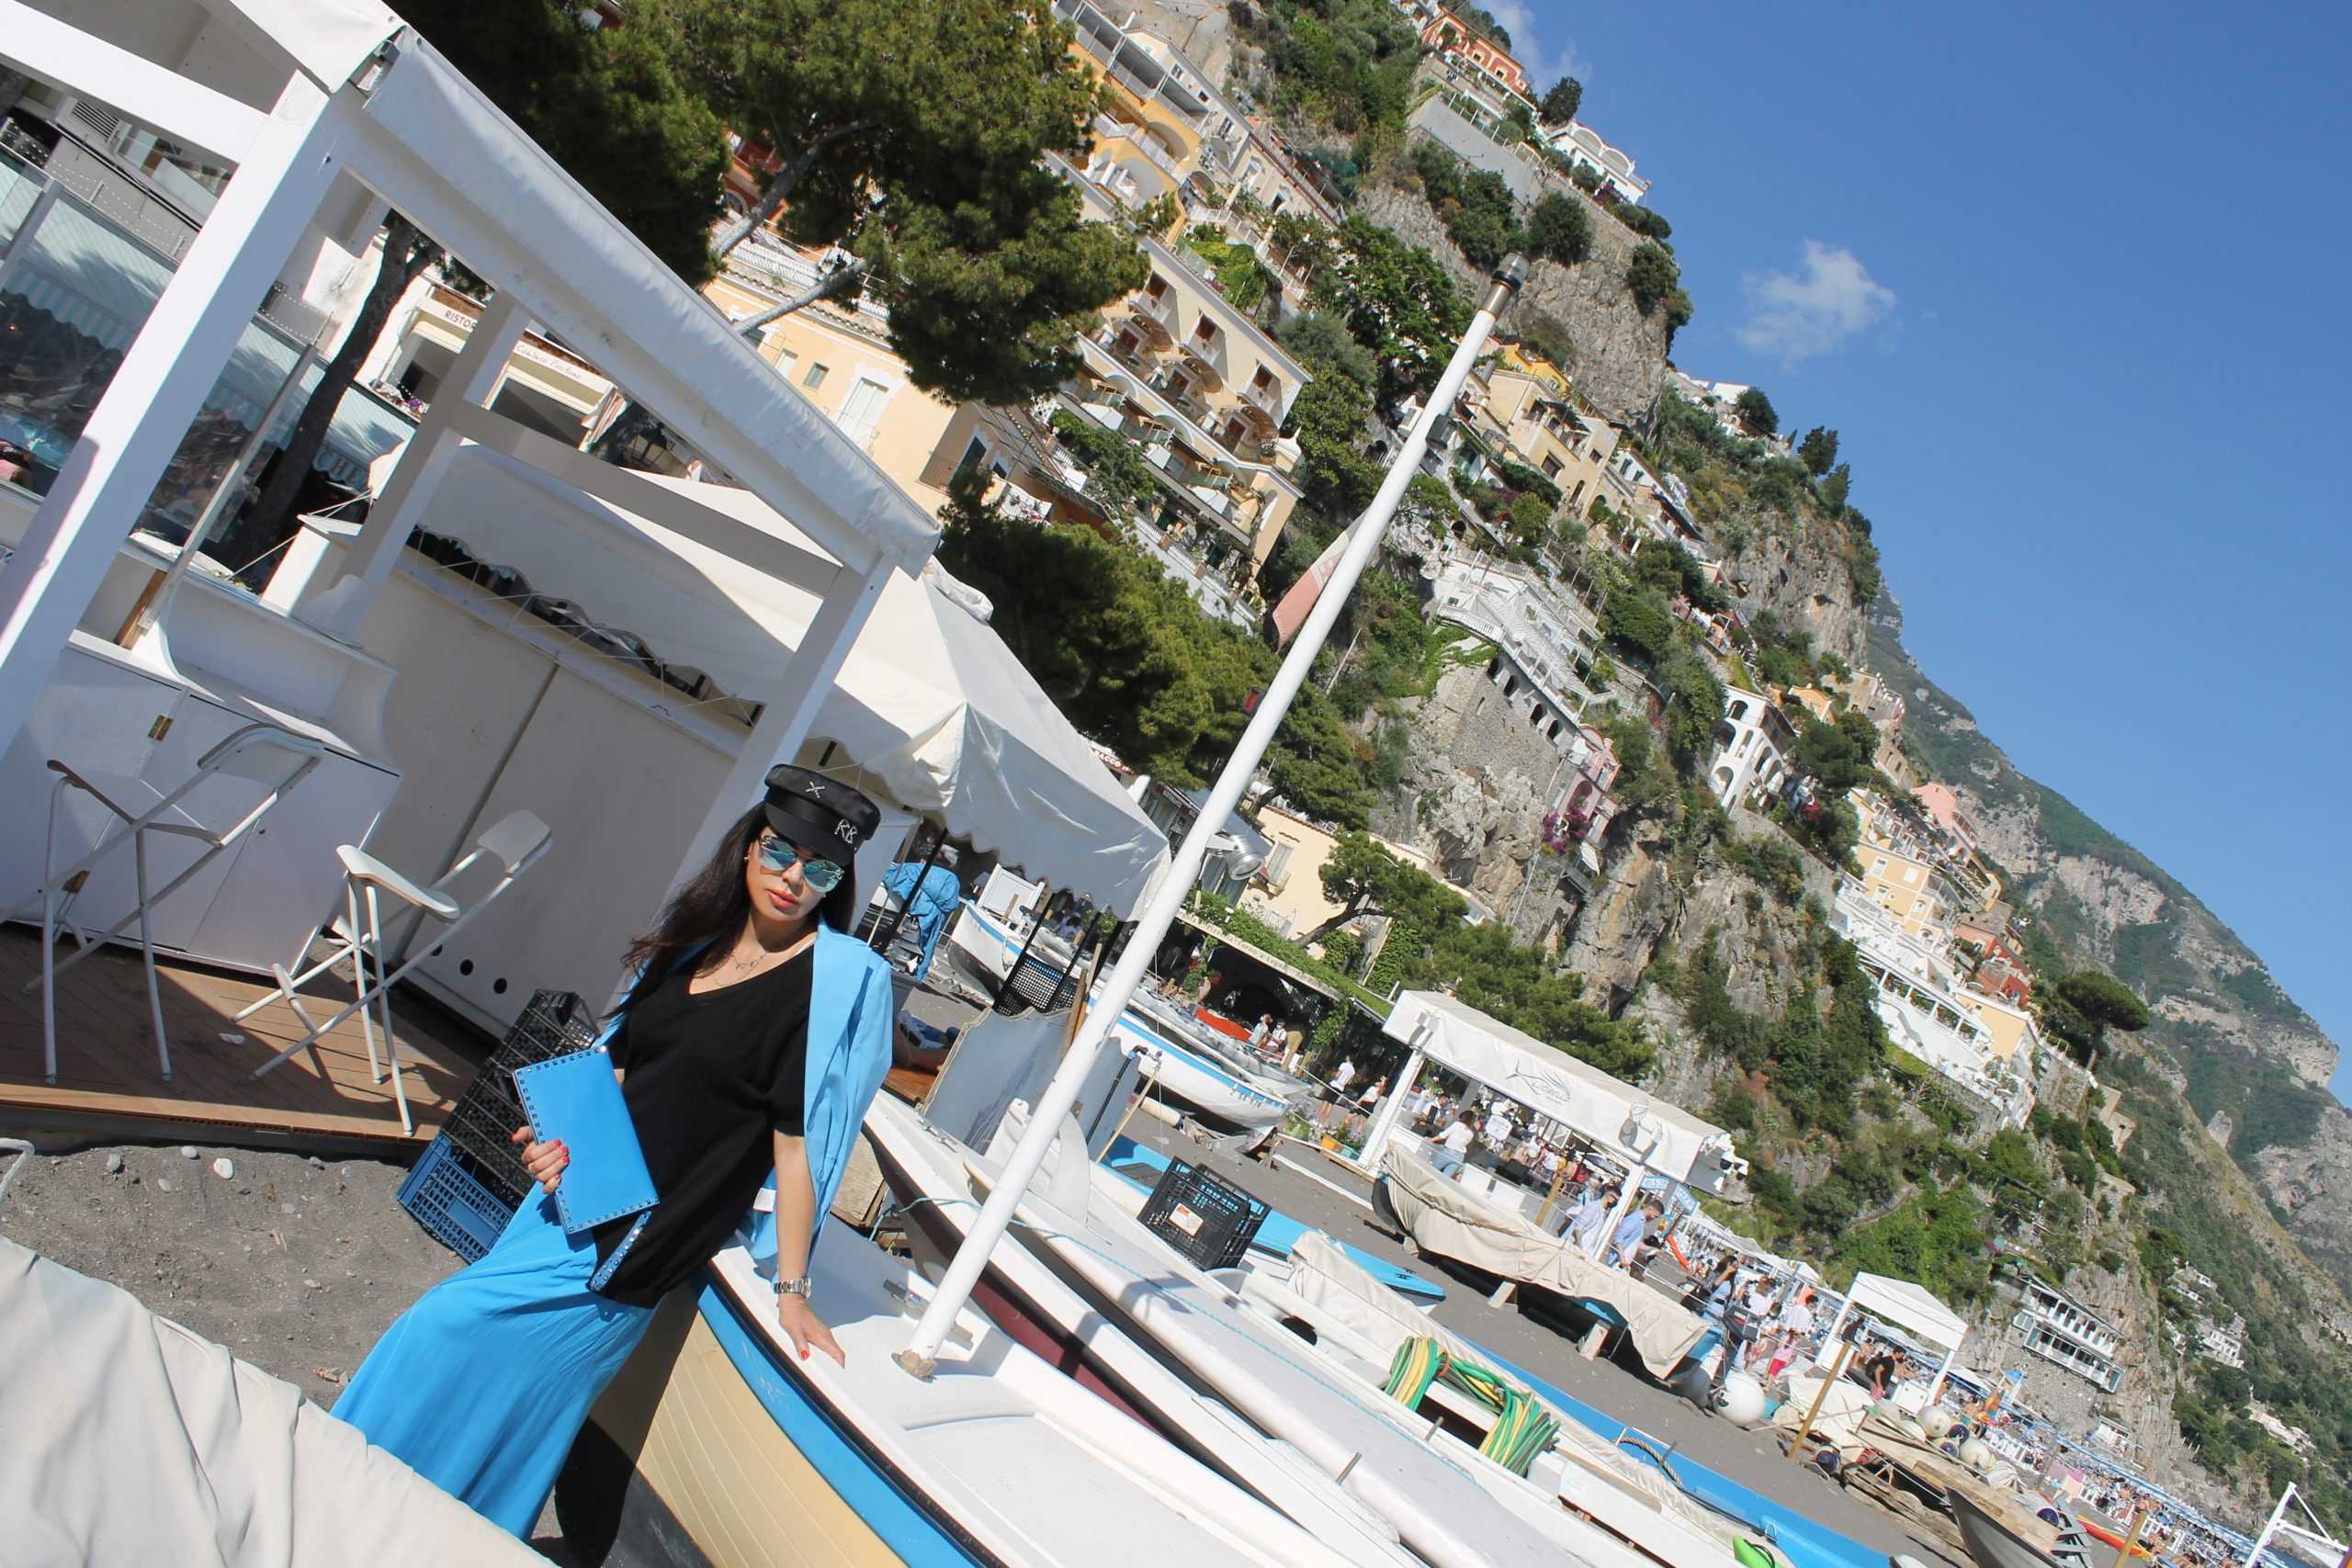 Amalfi Coast Positano Staycation Aesthetic Total Look Turquoise Dior LookBook